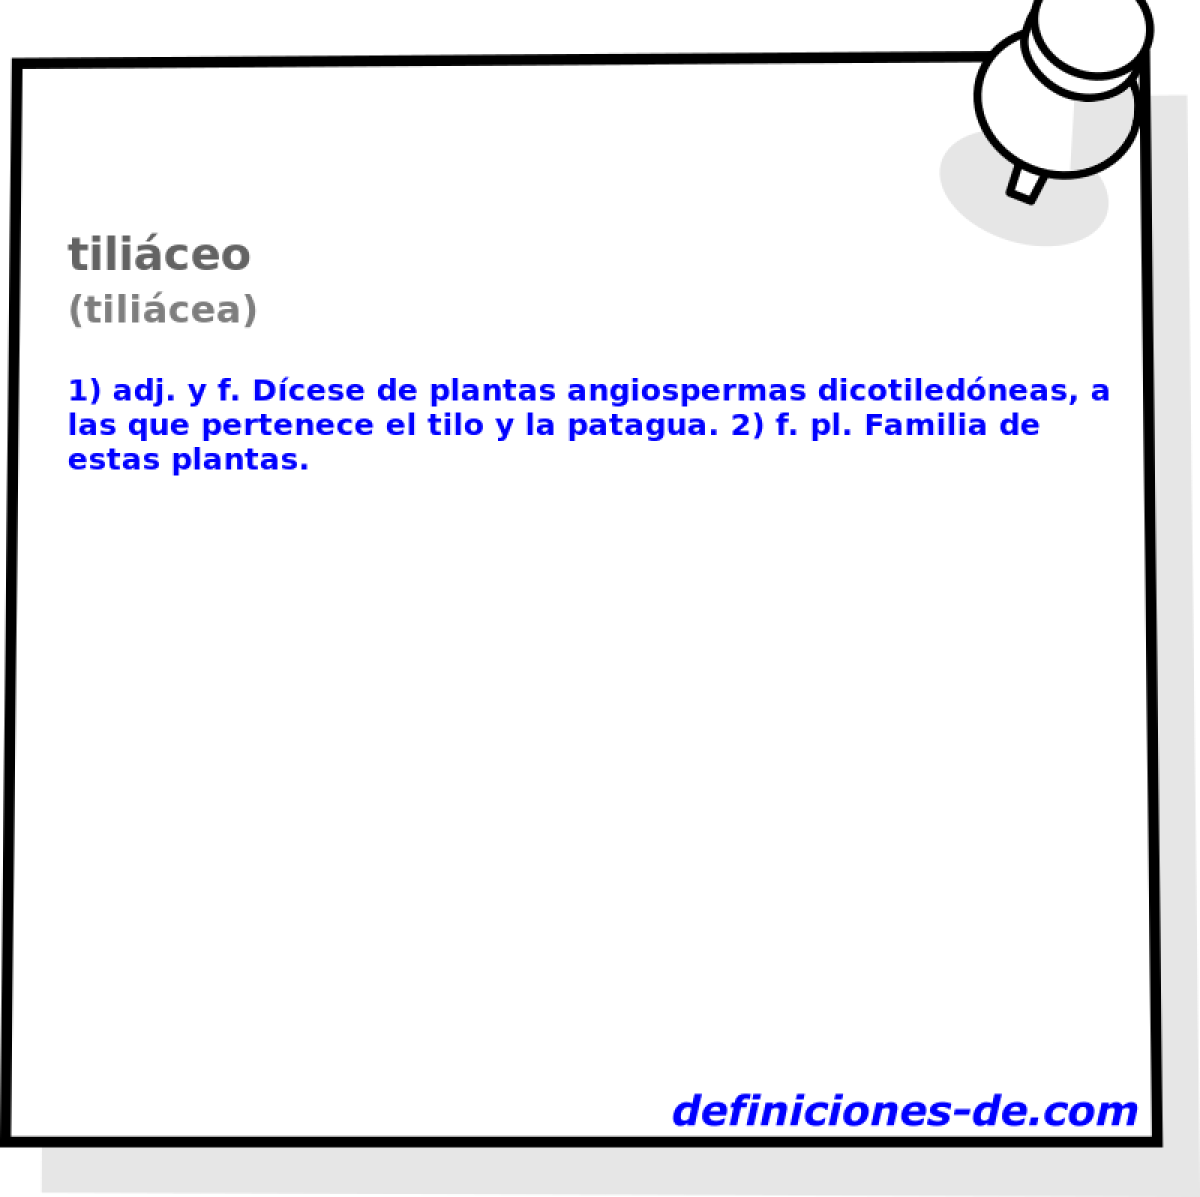 tiliceo (tilicea)